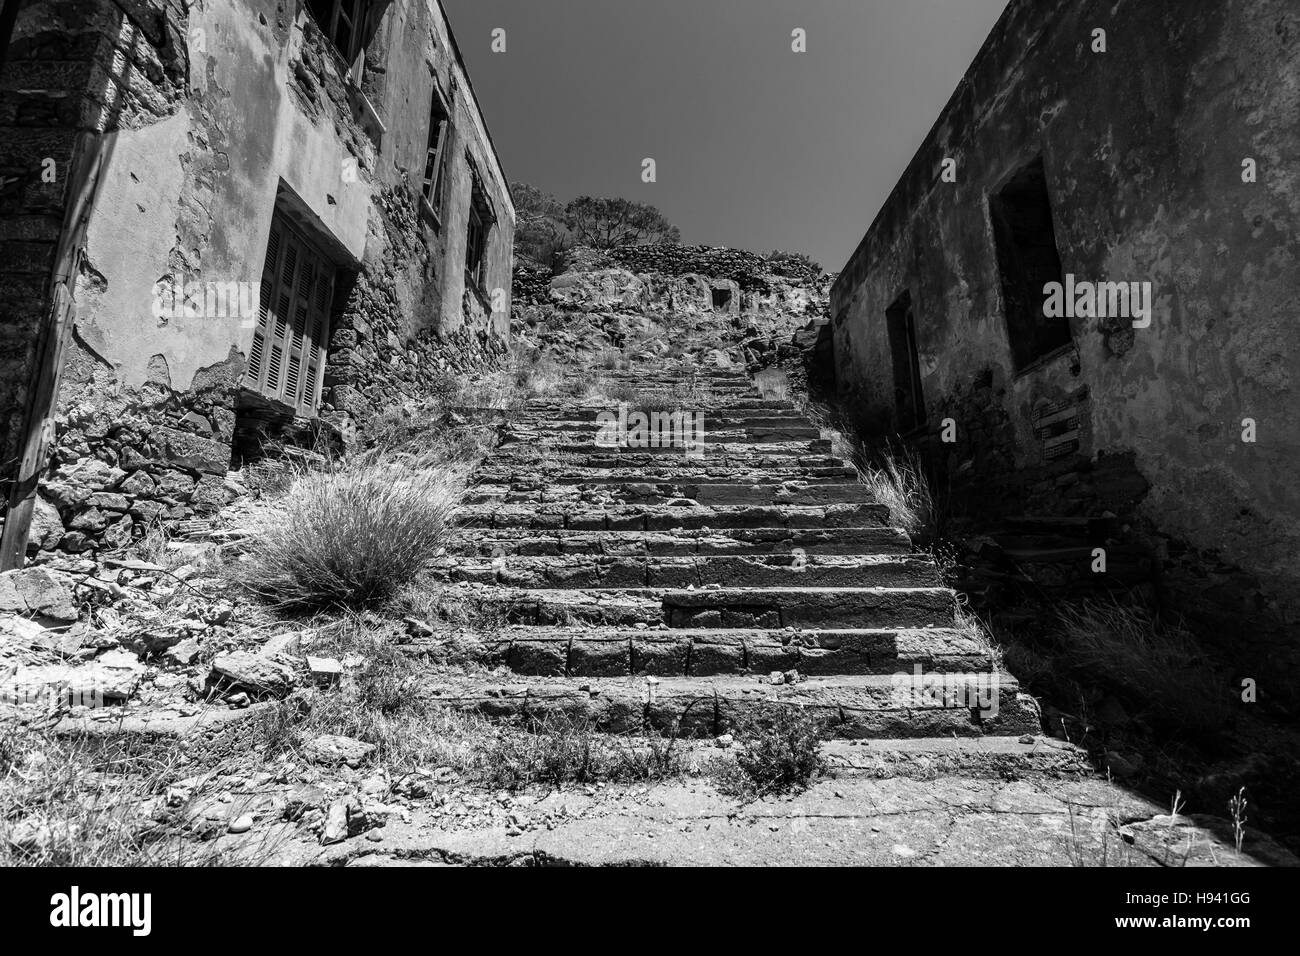 Le rovine del lebbrosario chiuso nel 50s sulle rovine di una fortezza veneziana sull isola di Spinalonga. Creta. La Grecia. In bianco e nero. Foto Stock